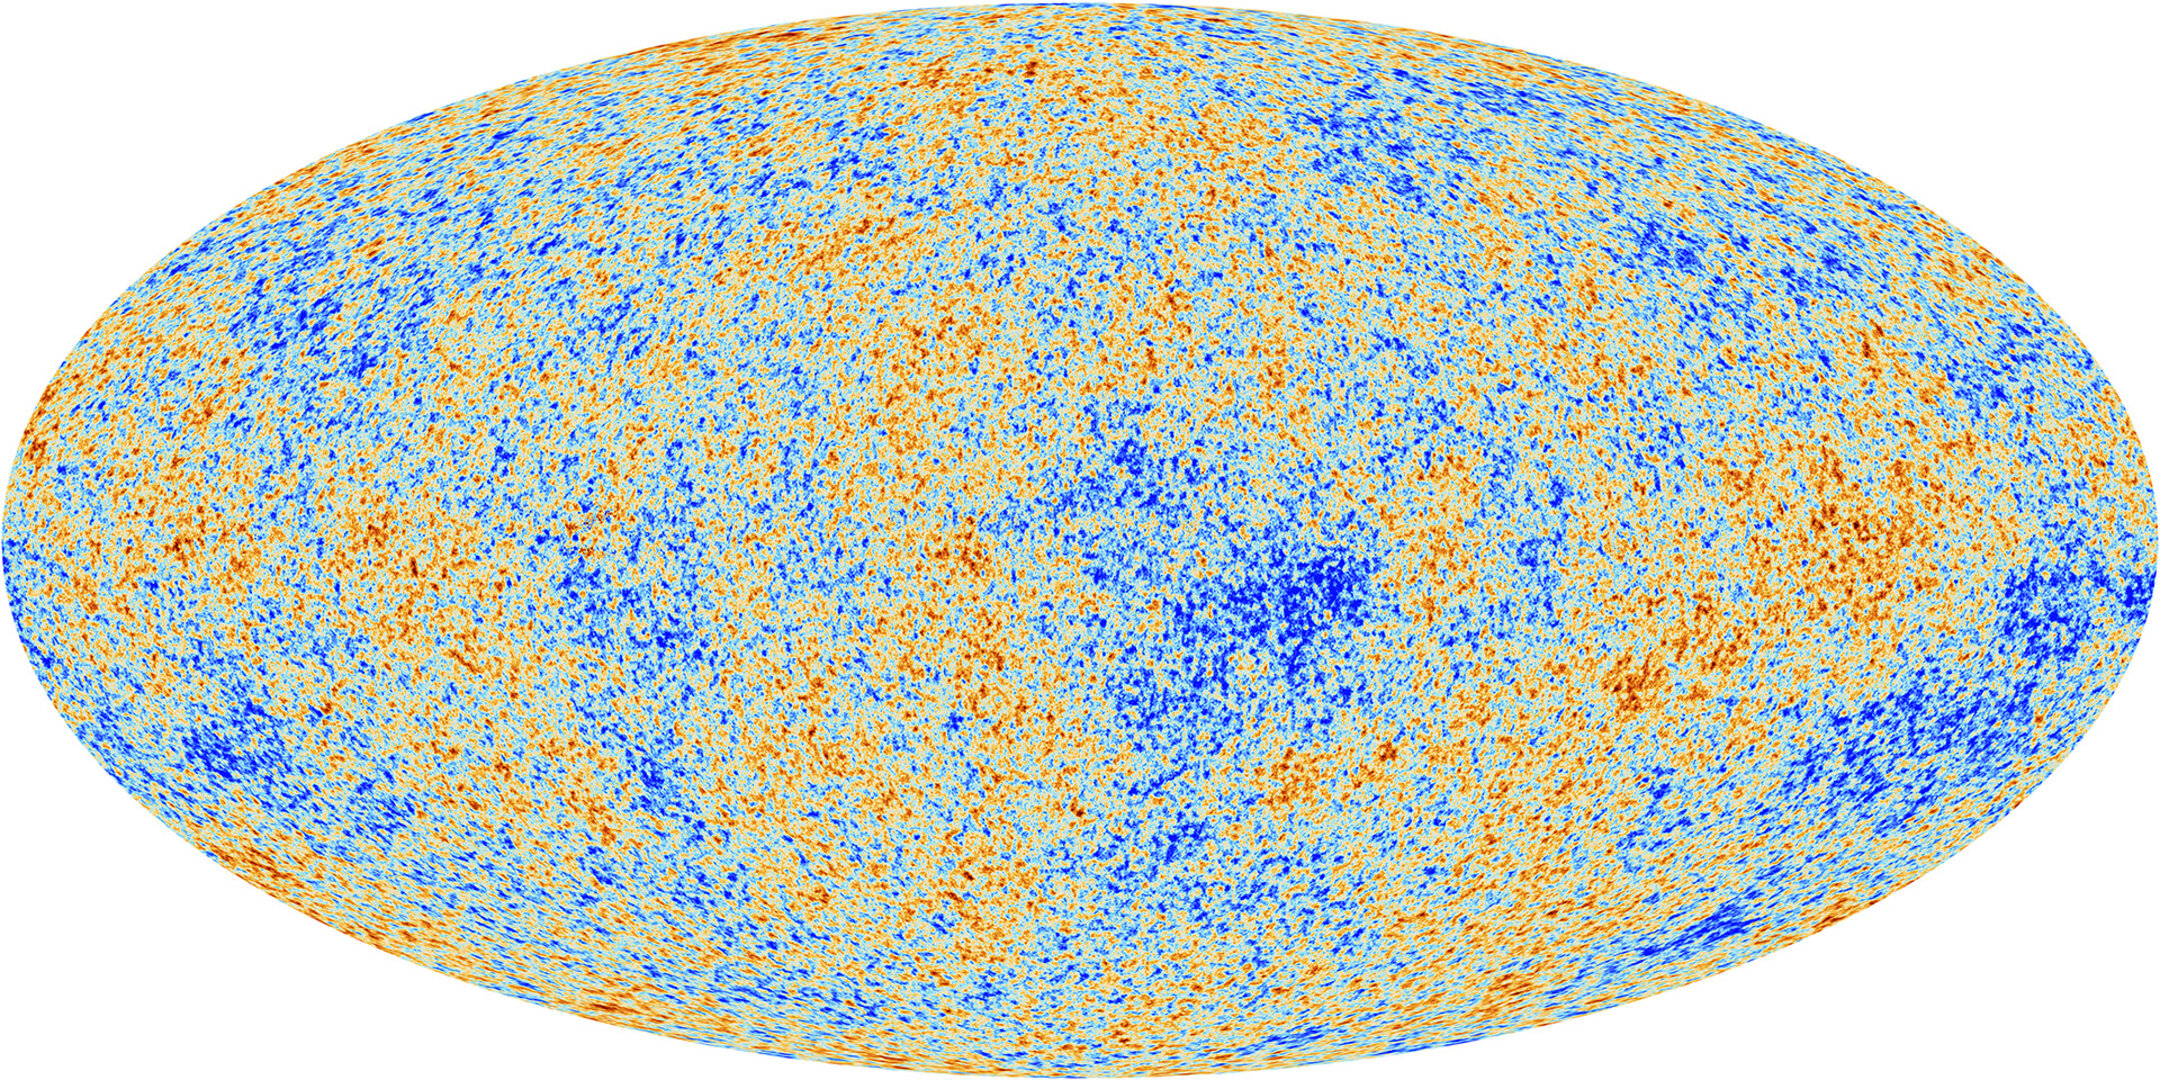 Rayonnement de fond cosmologique hyperfréquence détecté par Planck